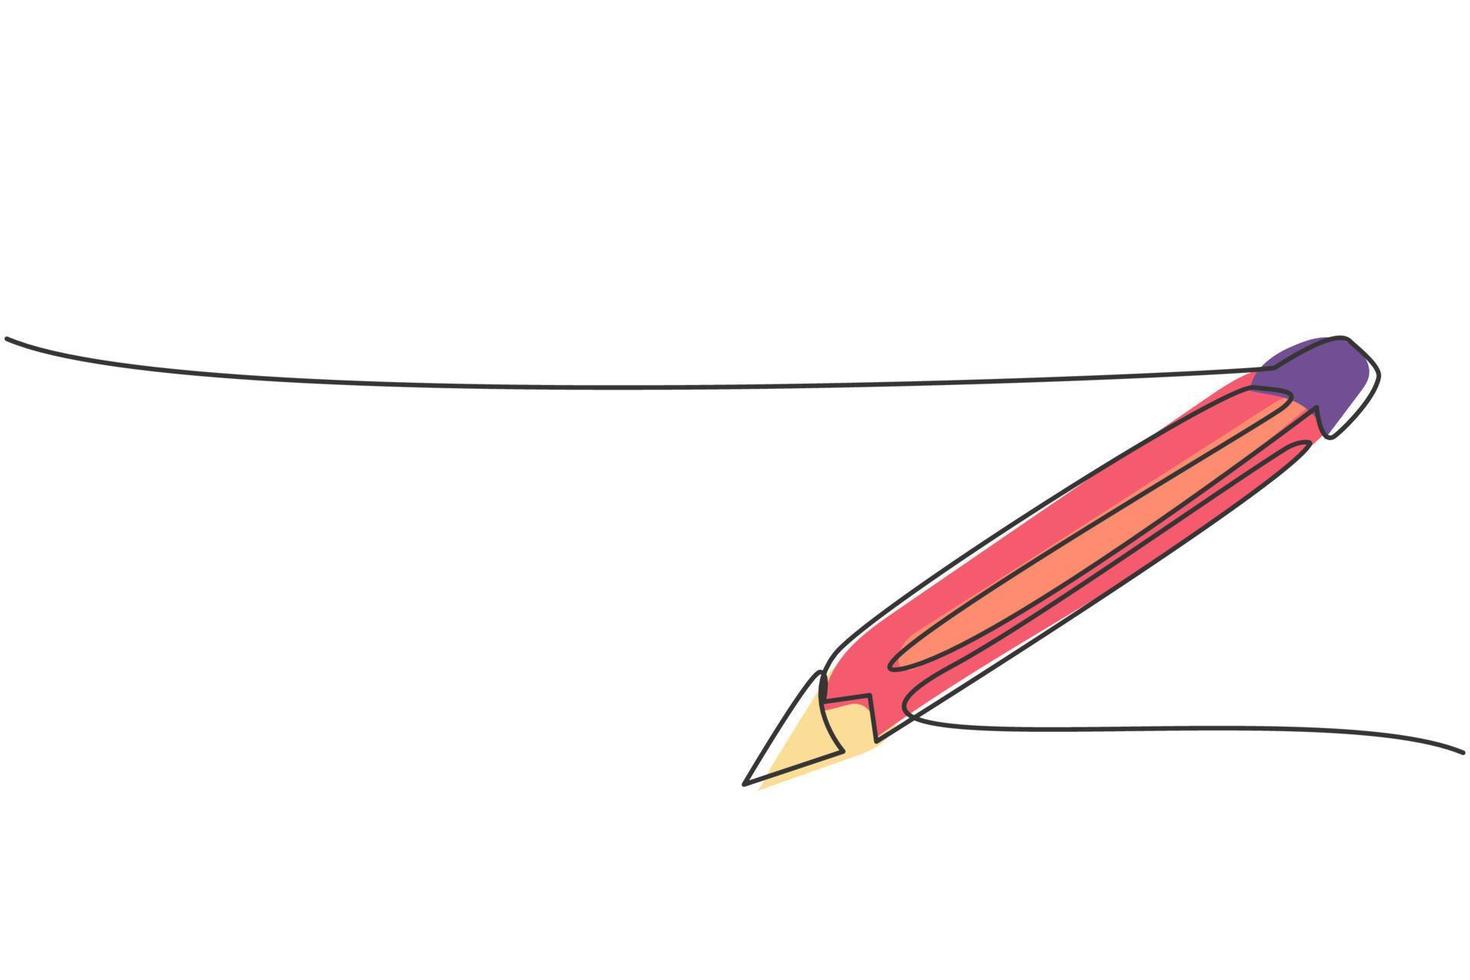 kontinuerlig enradsteckning av träpenna för att skriva på papper. tillbaka till skolan handritad minimalism koncept. enkel linje rita design för utbildning vektor grafisk illustration